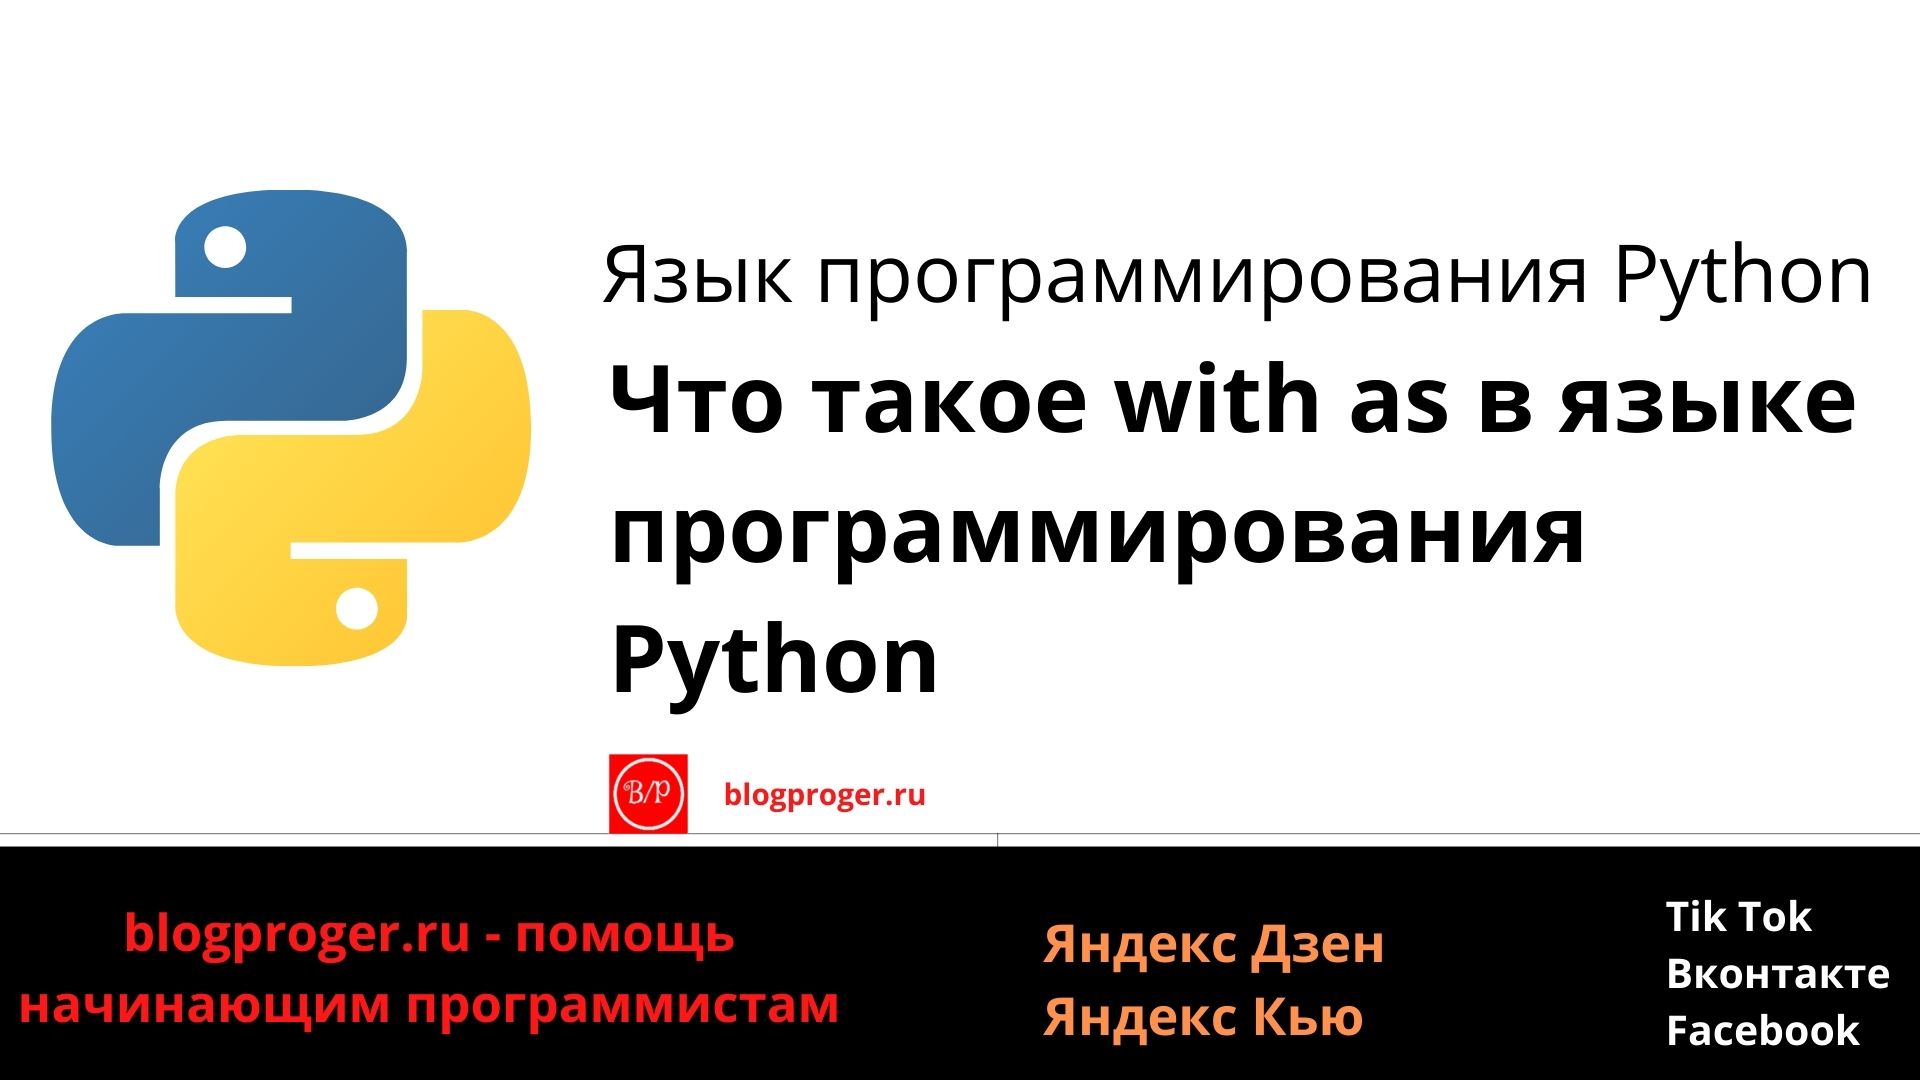 Что такое with as в языке программирования Python